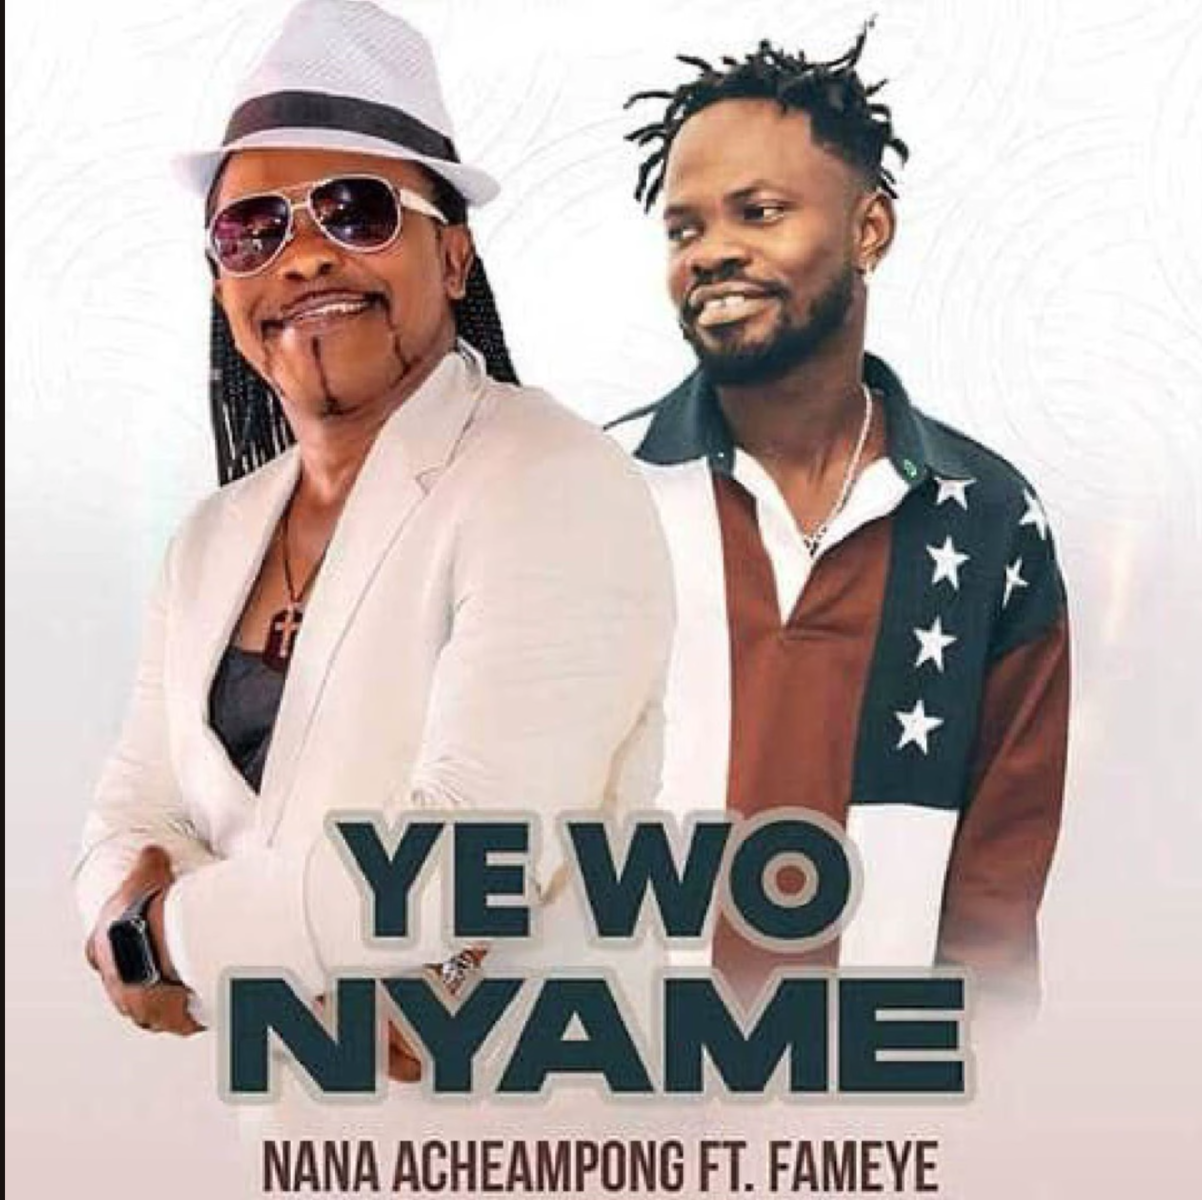 Yewo Nyame by Nana Acheampong feat. Fameye